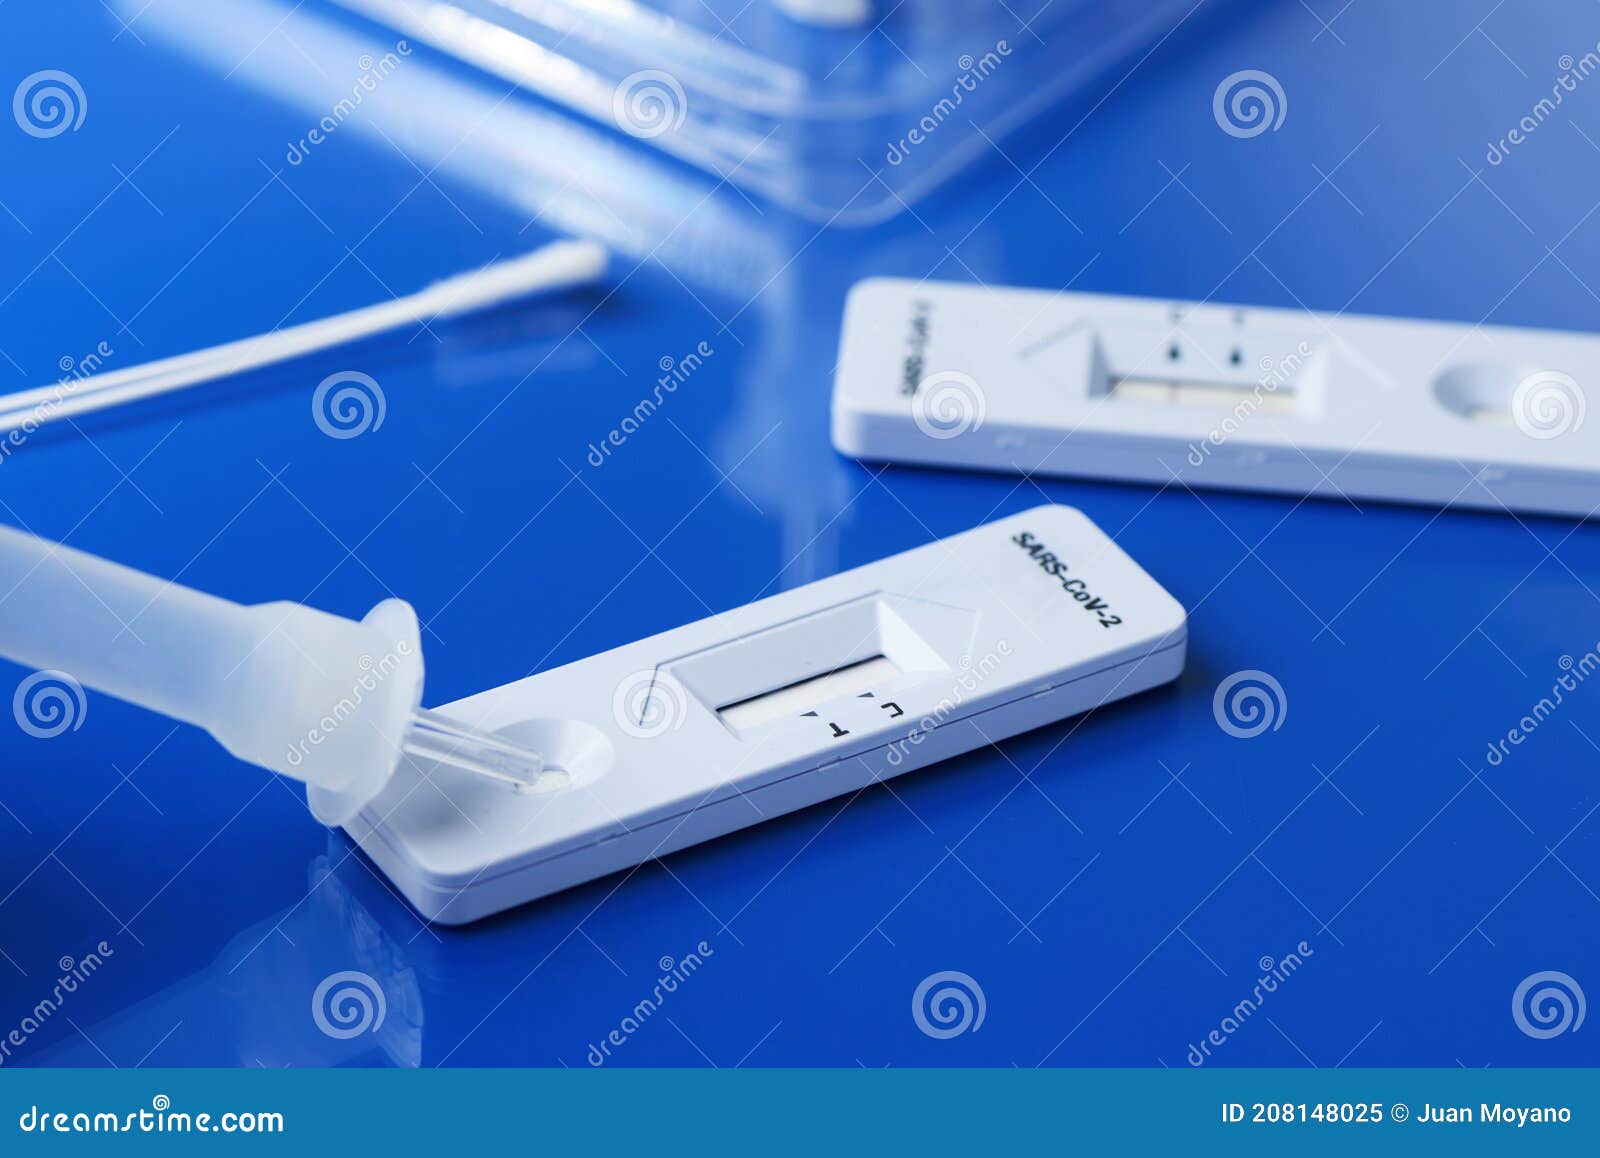 covid-19 rapid antigen test kits